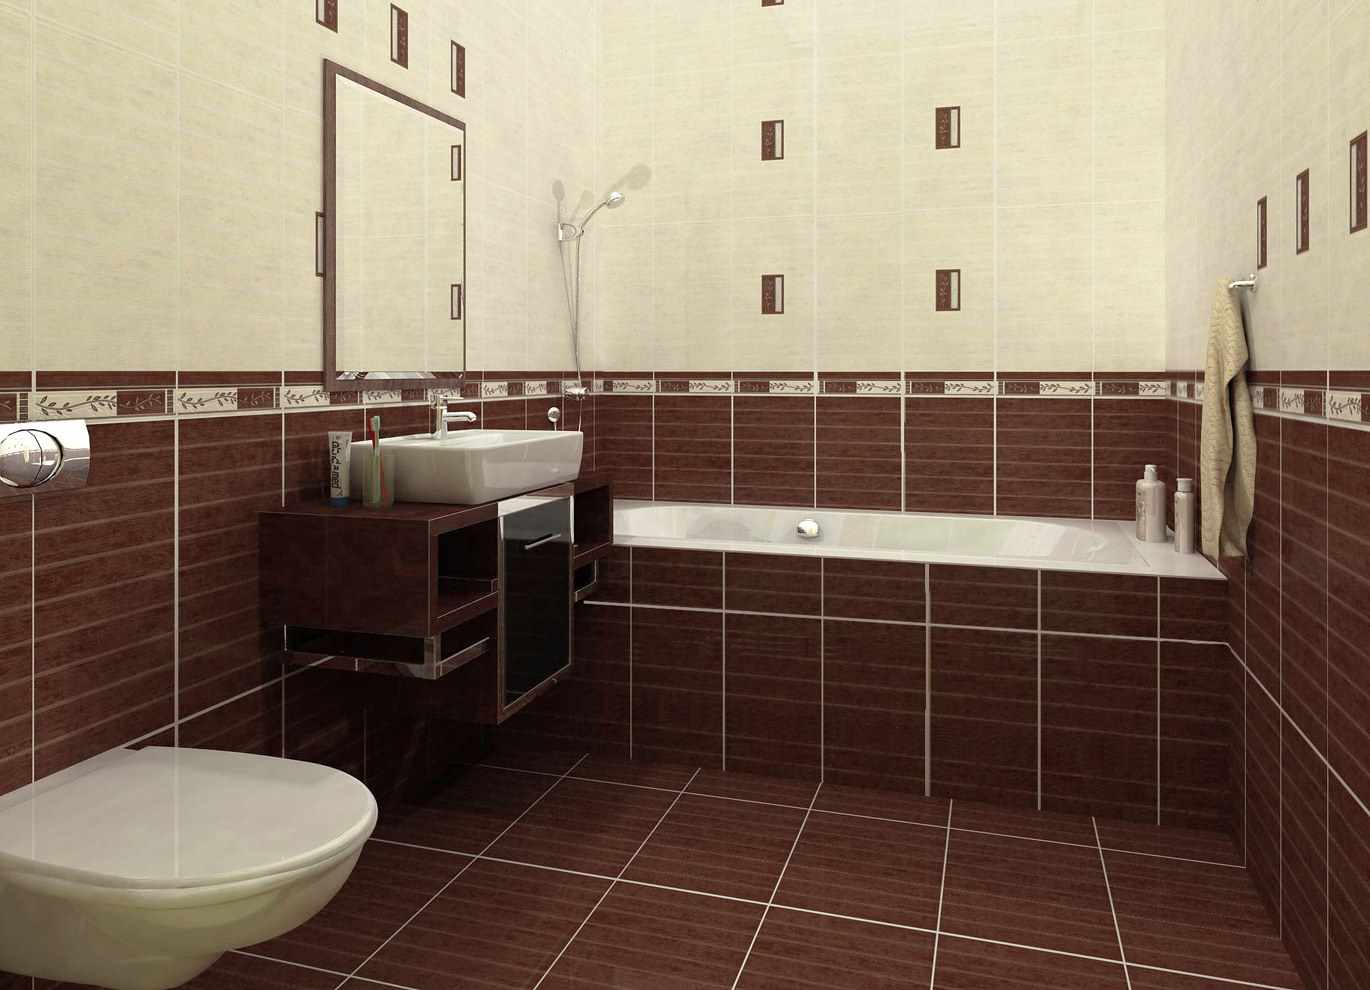 Một ví dụ về thiết kế đẹp của phòng tắm với ốp lát